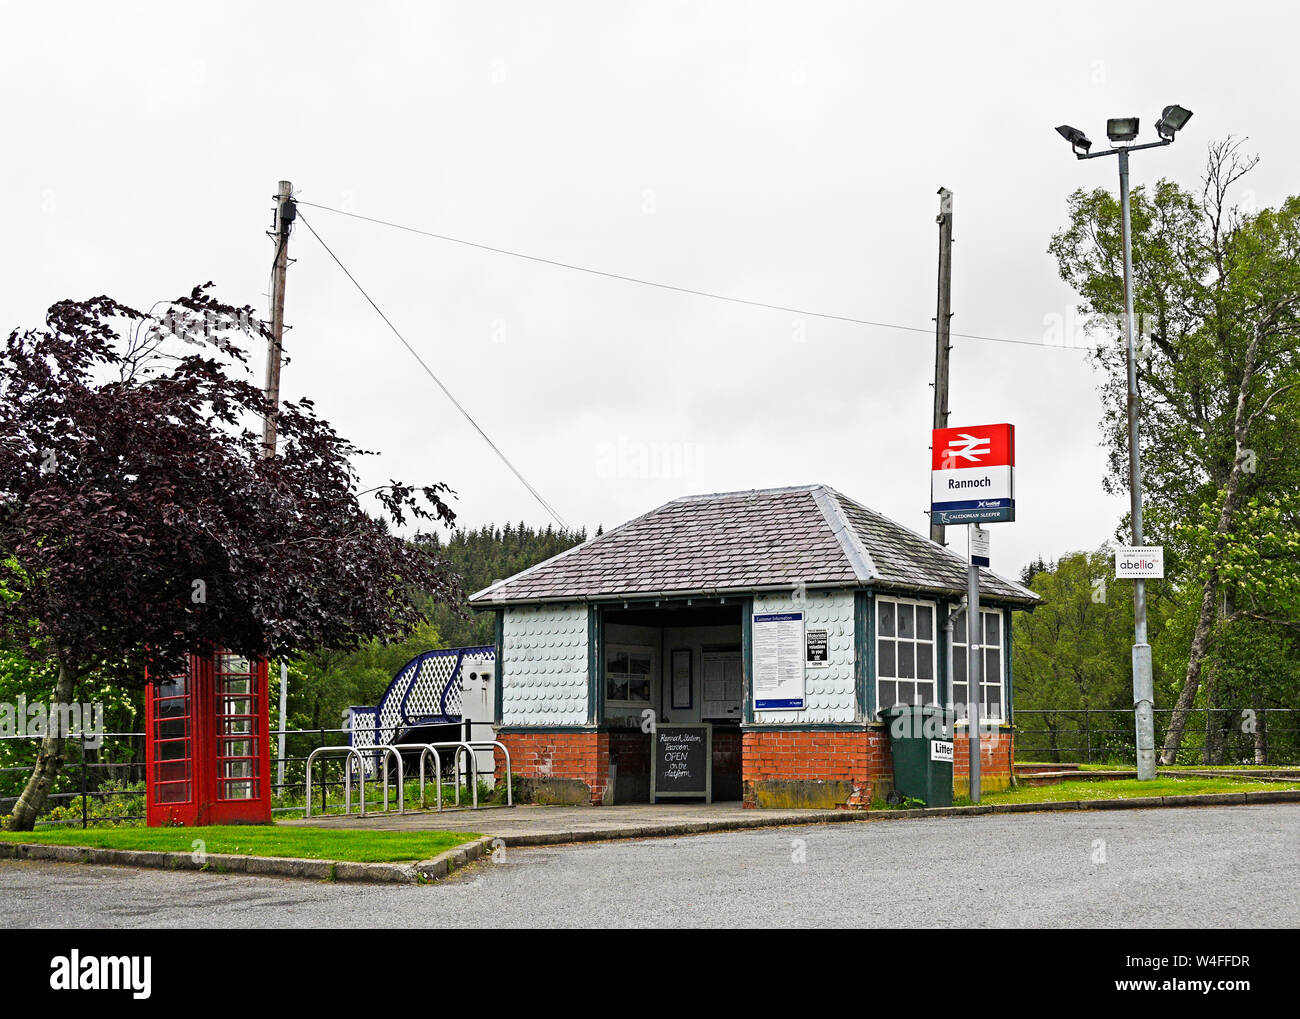 Rannoch stazione ferroviaria, Perth and Kinross, Scotland, Regno Unito, Europa. Foto Stock